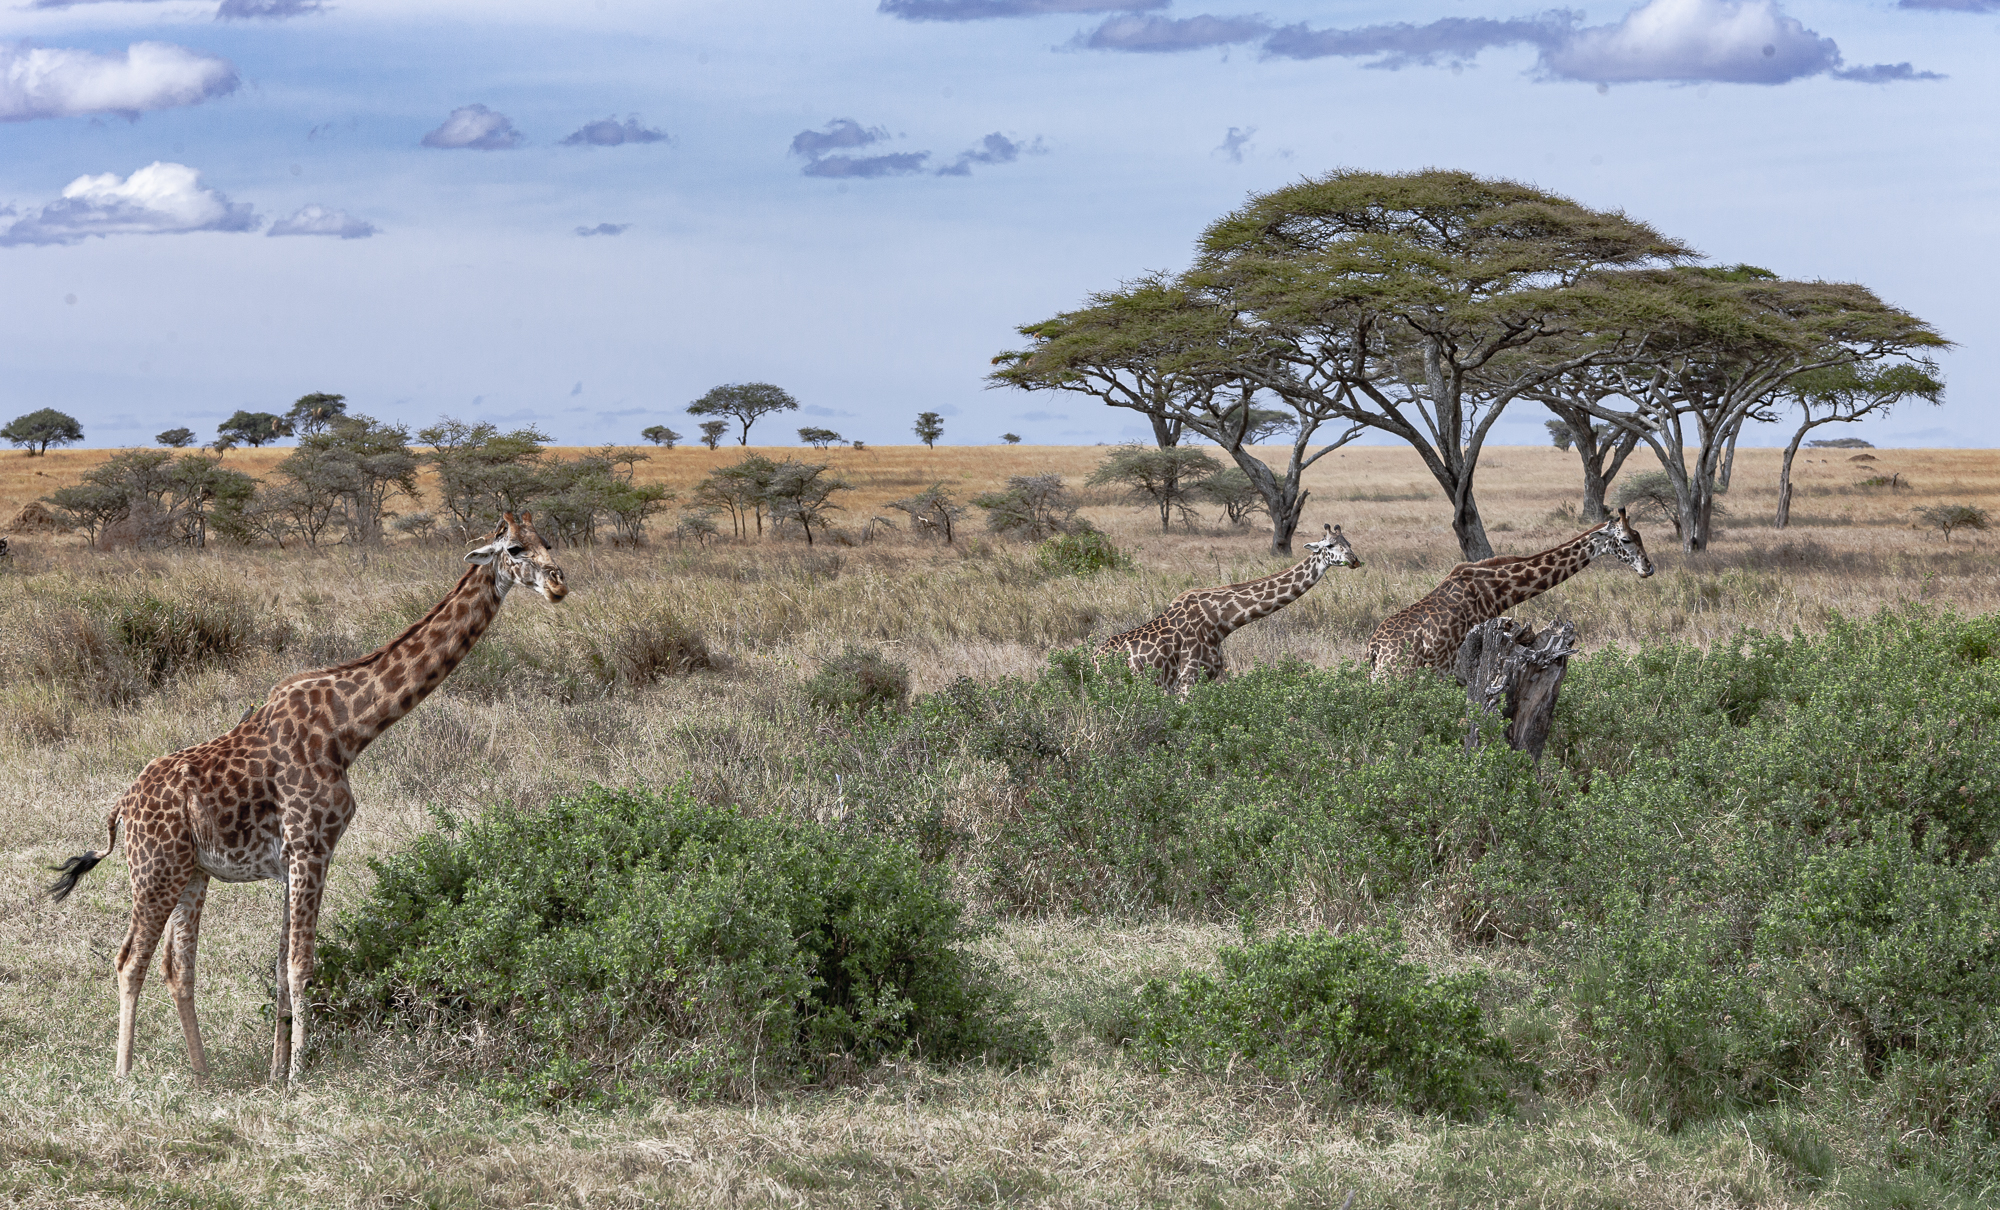 Giraffe, Tanzania, Africa 2008